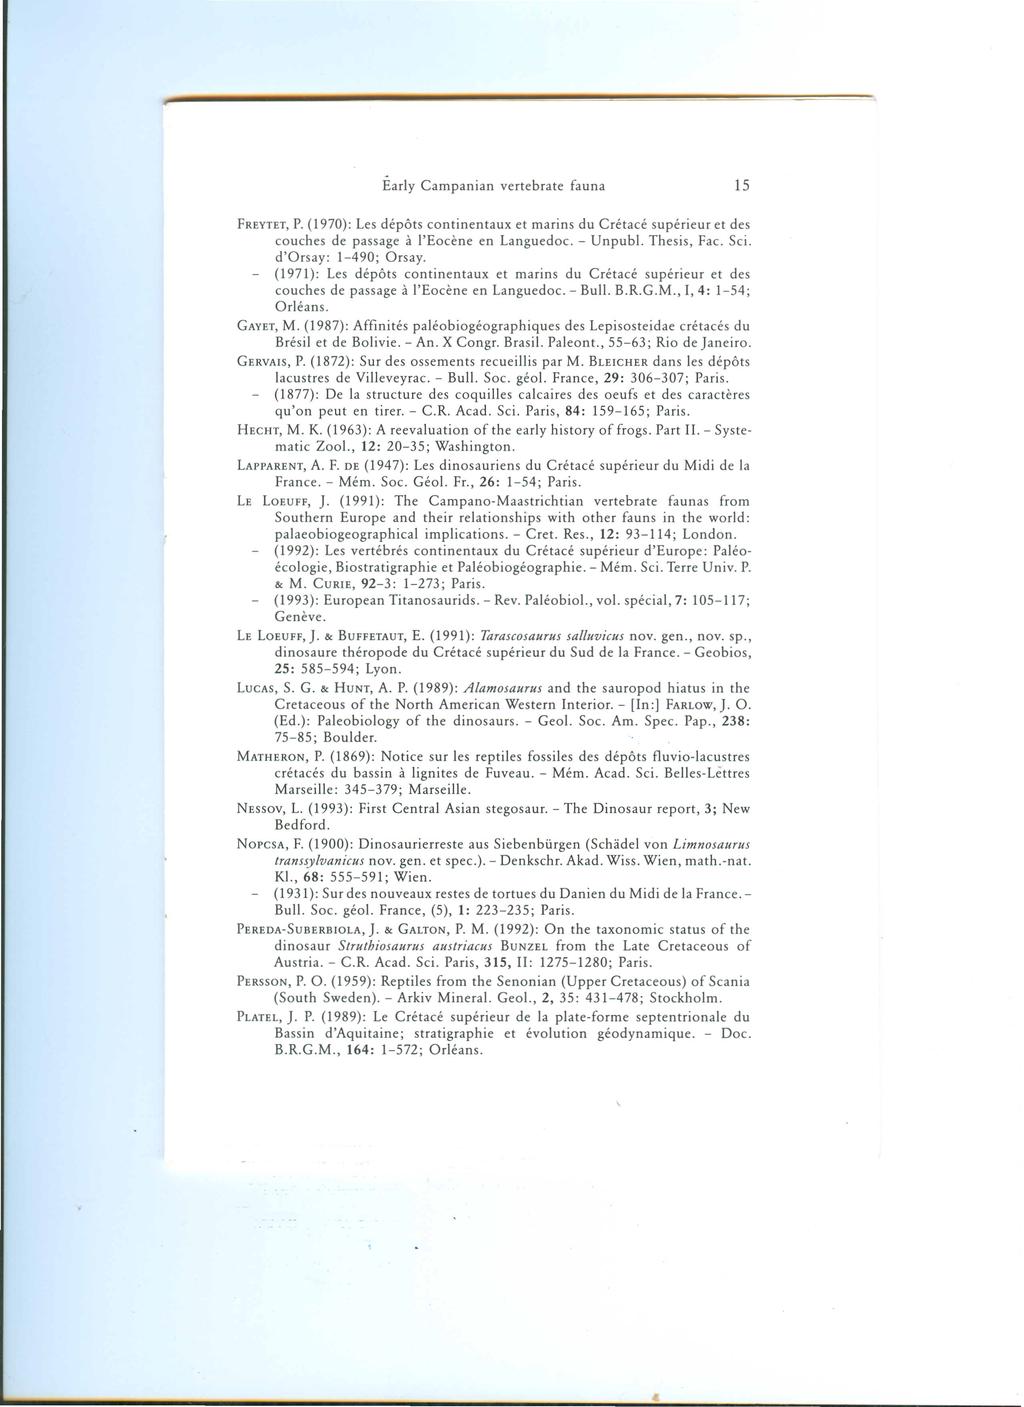 FREYTET,P. (1970): Les depots continentaux et marins du Cretace superieur et des couches de passage a I'Eocene en Languedoc. - Unpubl. Thesis, Fac. Sci. d'orsay: 1-490; Orsay.